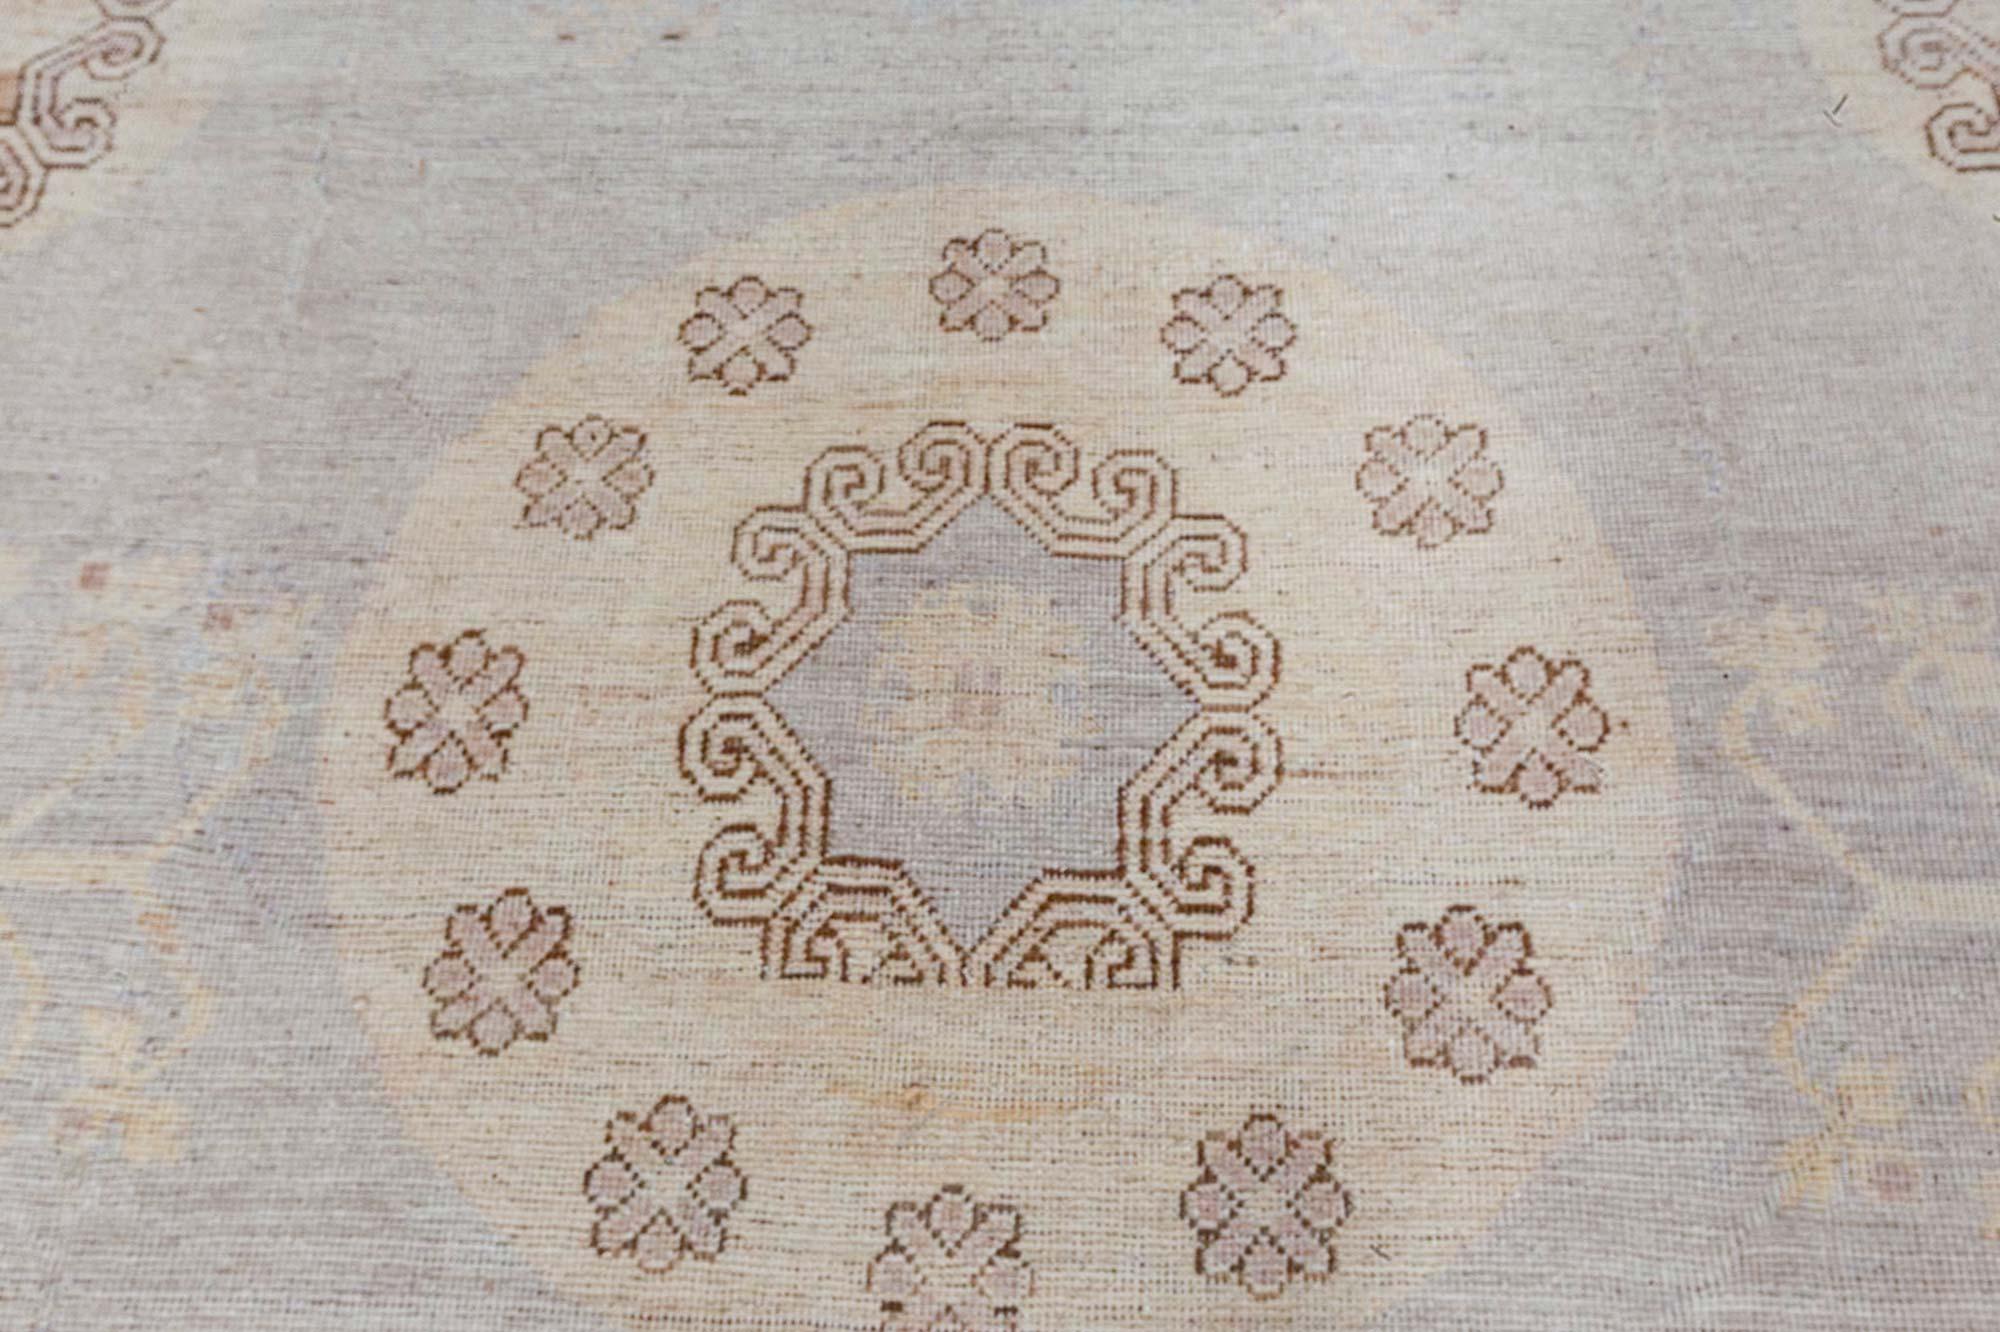 Moderner Samarkand-Teppich von Doris Leslie Blau.
Größe: 10'0